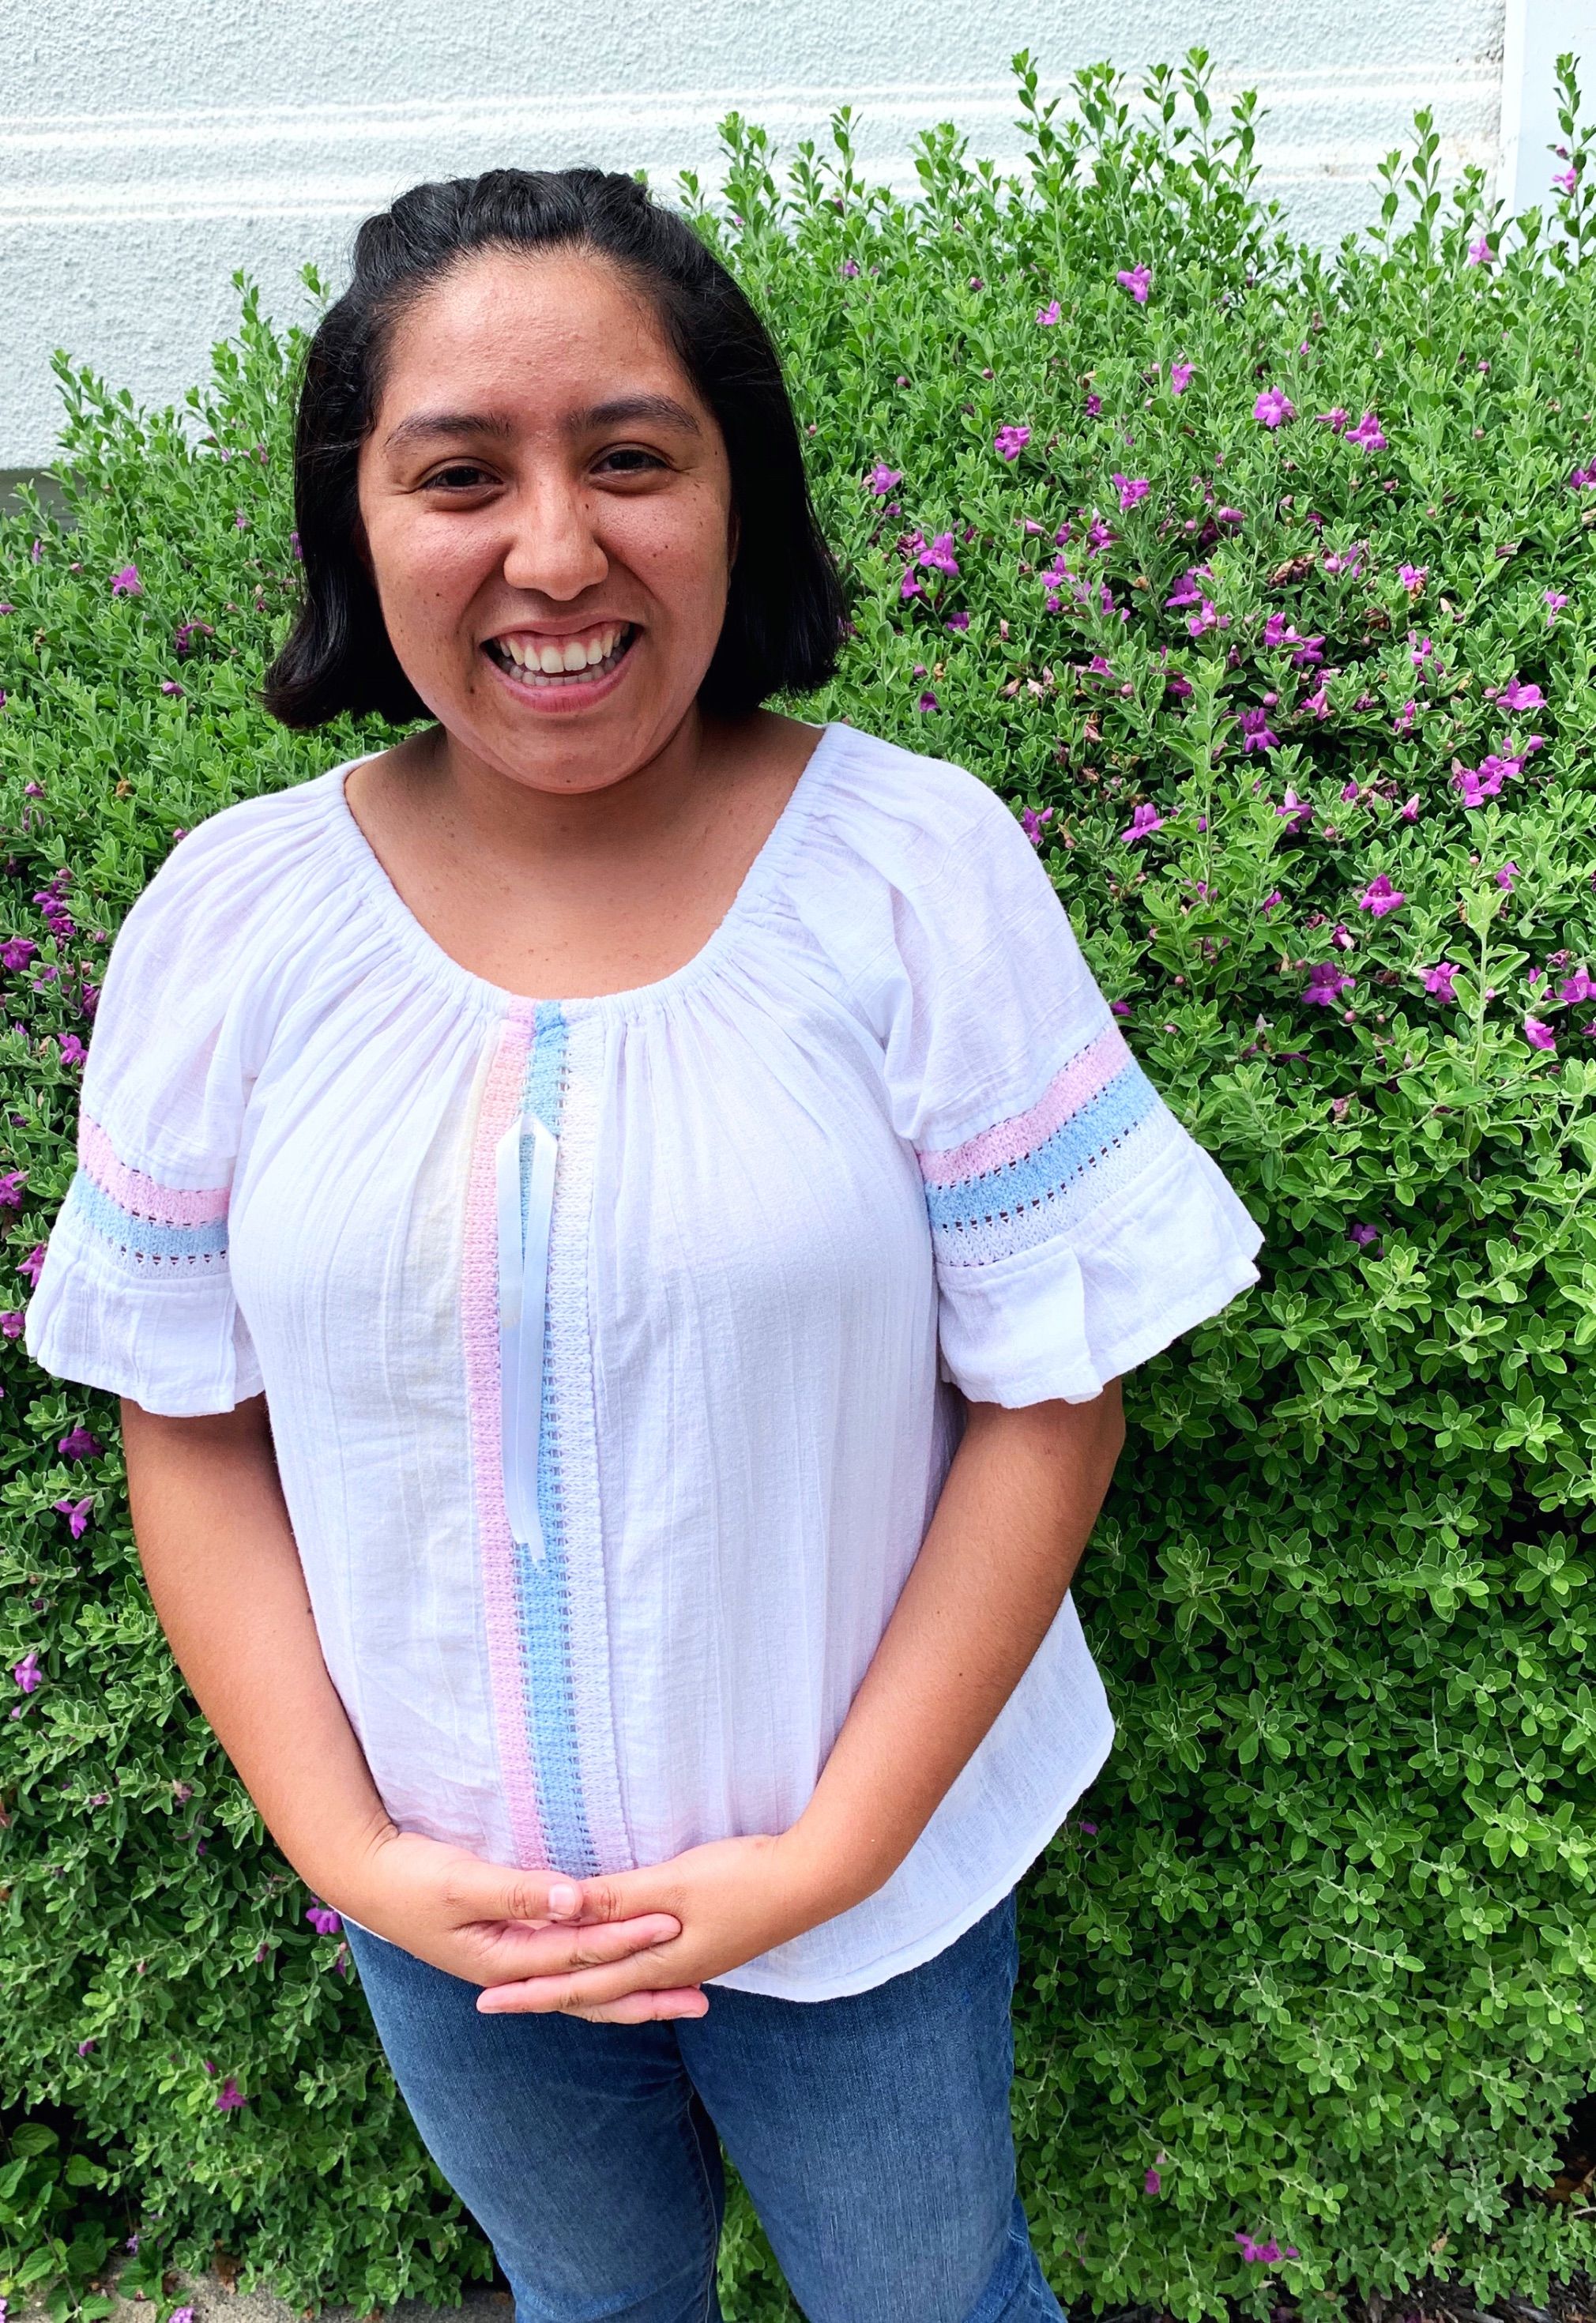 Meet Ruth Martinez, Volunteer, Young Professionals Committee